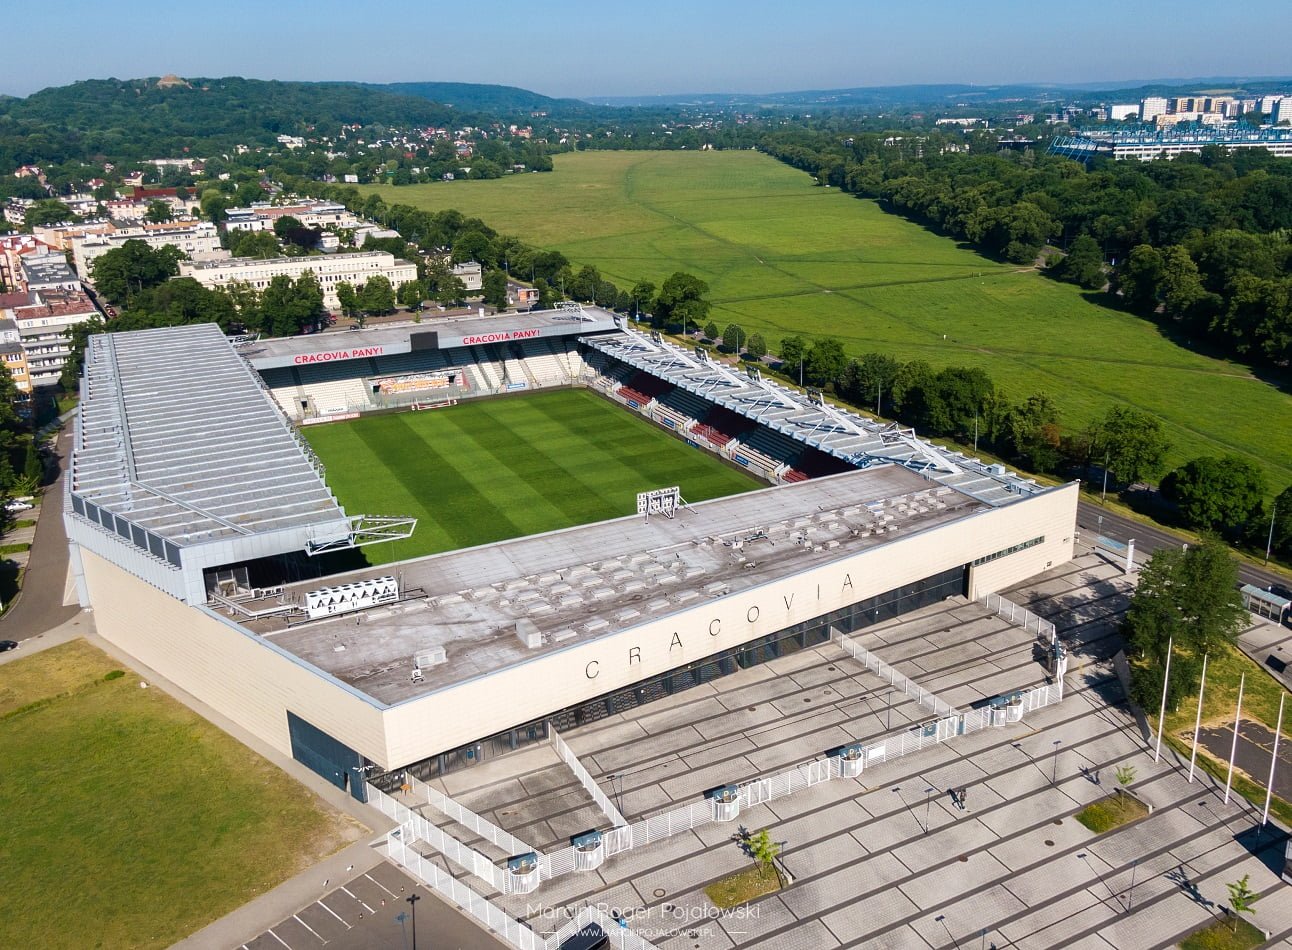 Cracovia Stadium,Krakow guide,krakow information,kraków drone shots,visit krakow